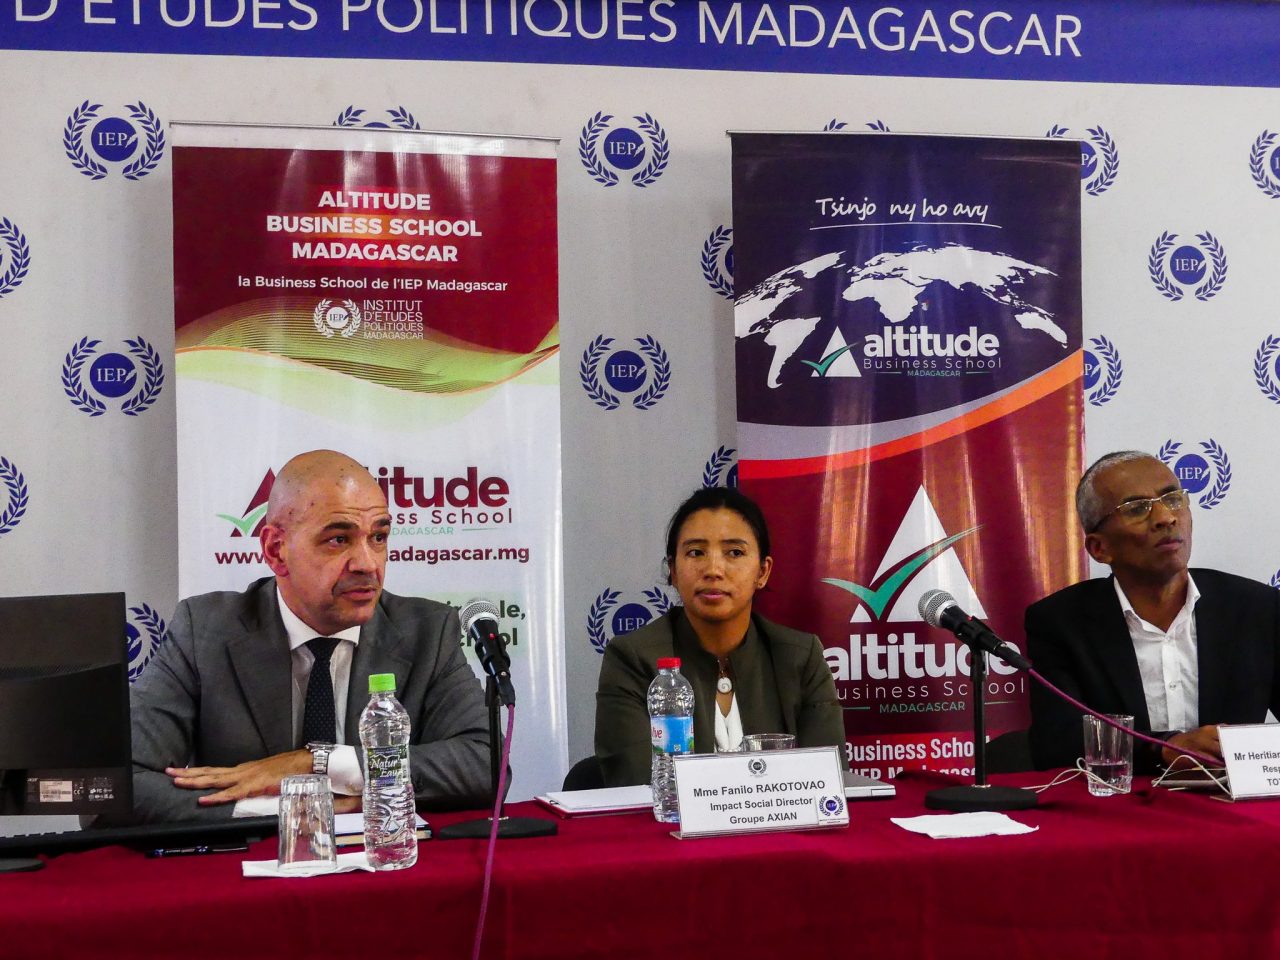 “Le Manager face à la RSE “ - IEP Altitude Group Madagascar